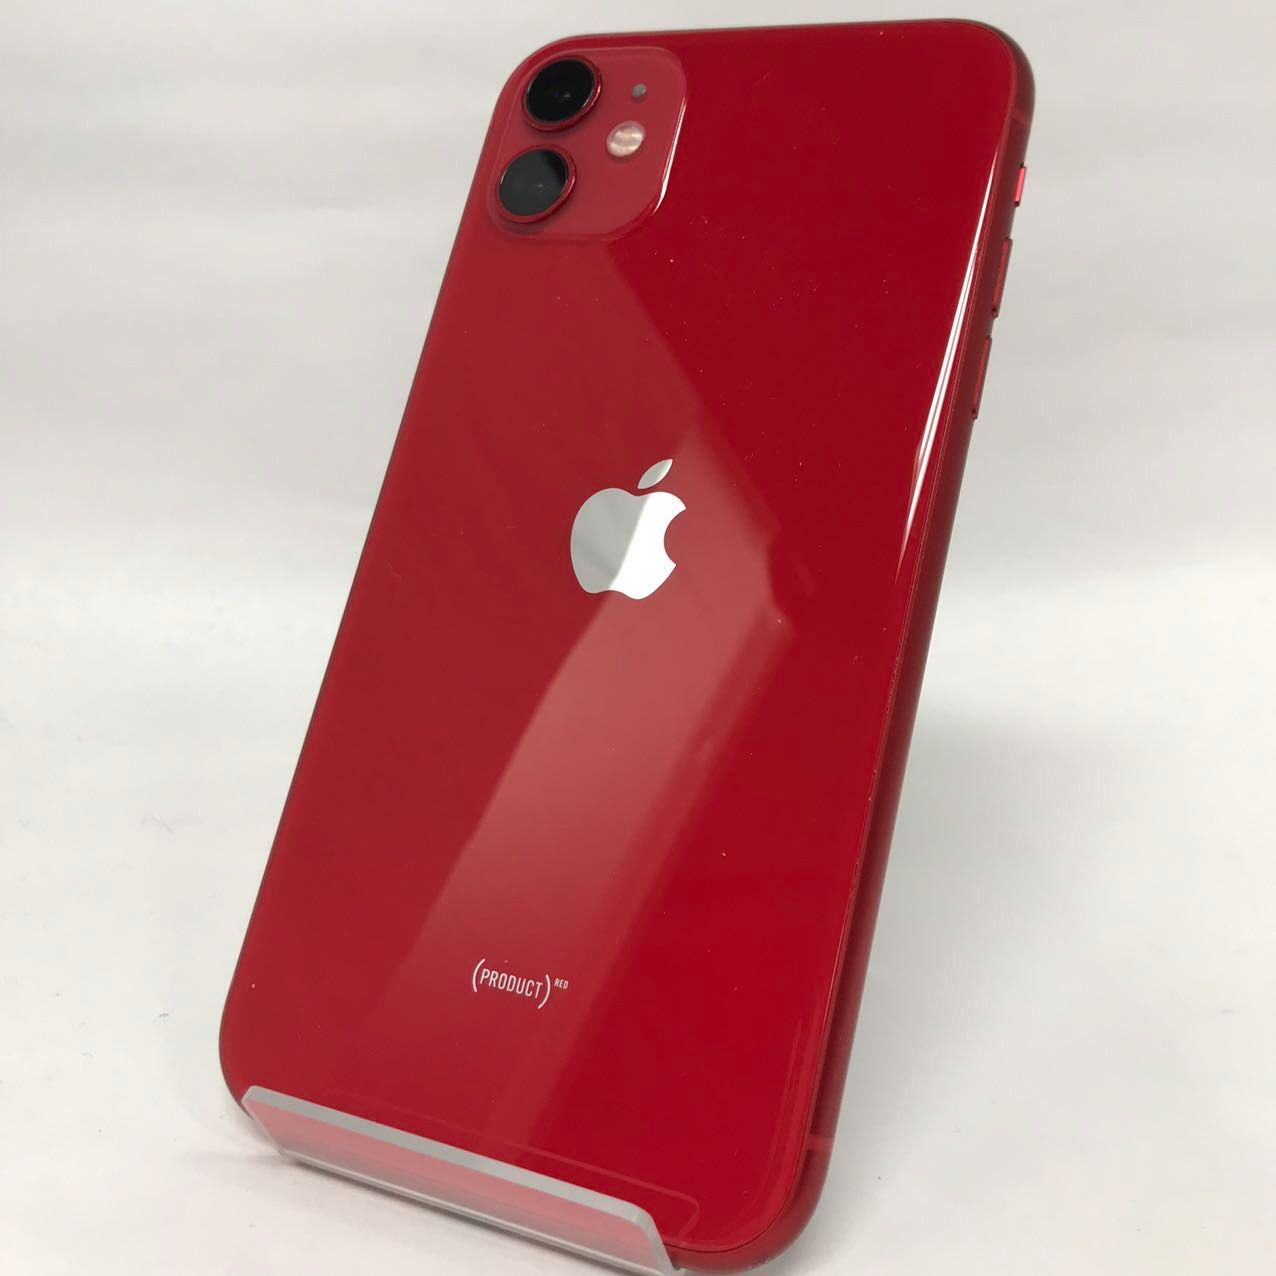 iPhone 11 64GB レッド Cランク SIMフリー Apple 2148 - メルカリ